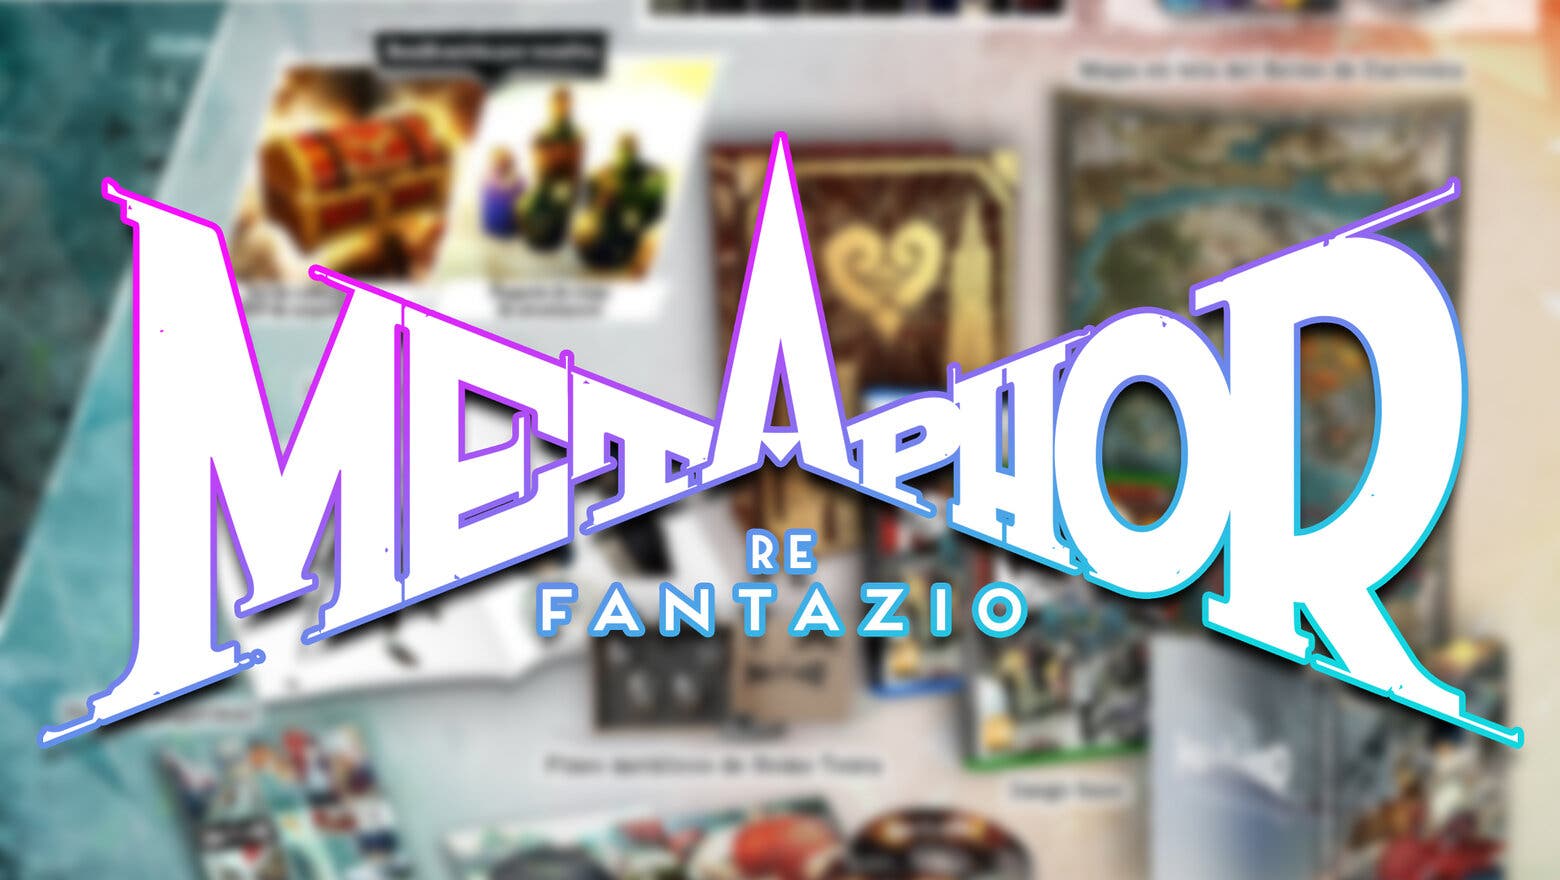 Imagen de Las reservas de la coleccionista Metaphor: ReFantazio ya están abiertas en España, pero ¡date prisa, que vuelan!